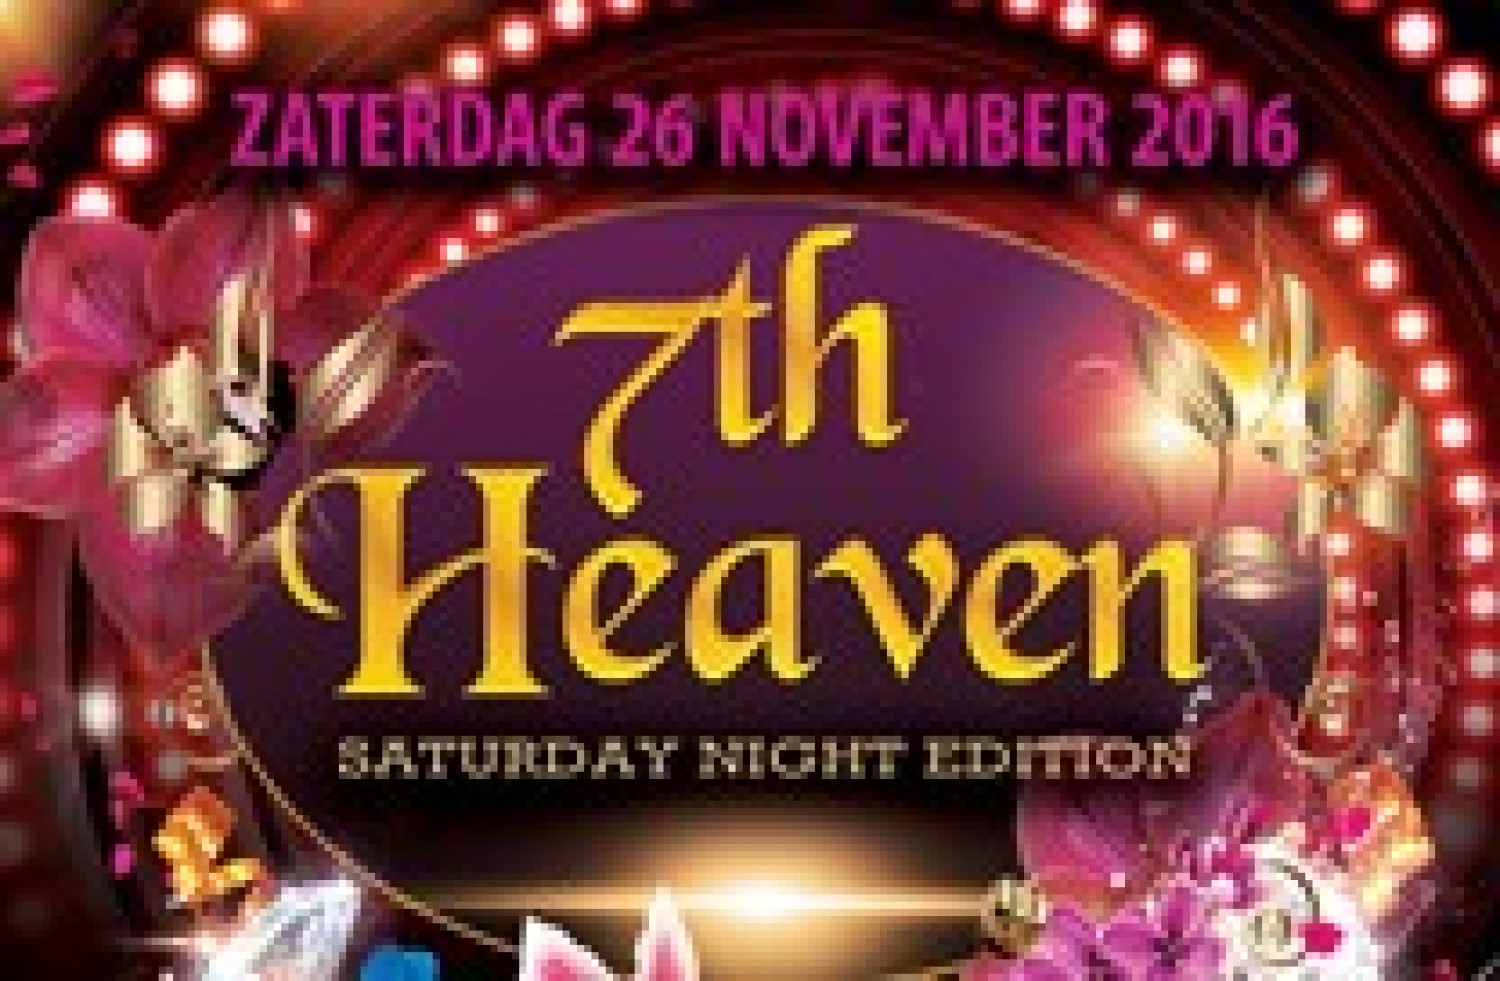 Party nieuws: Ervaar het 7th Heaven gevoel op zaterdag 26 november